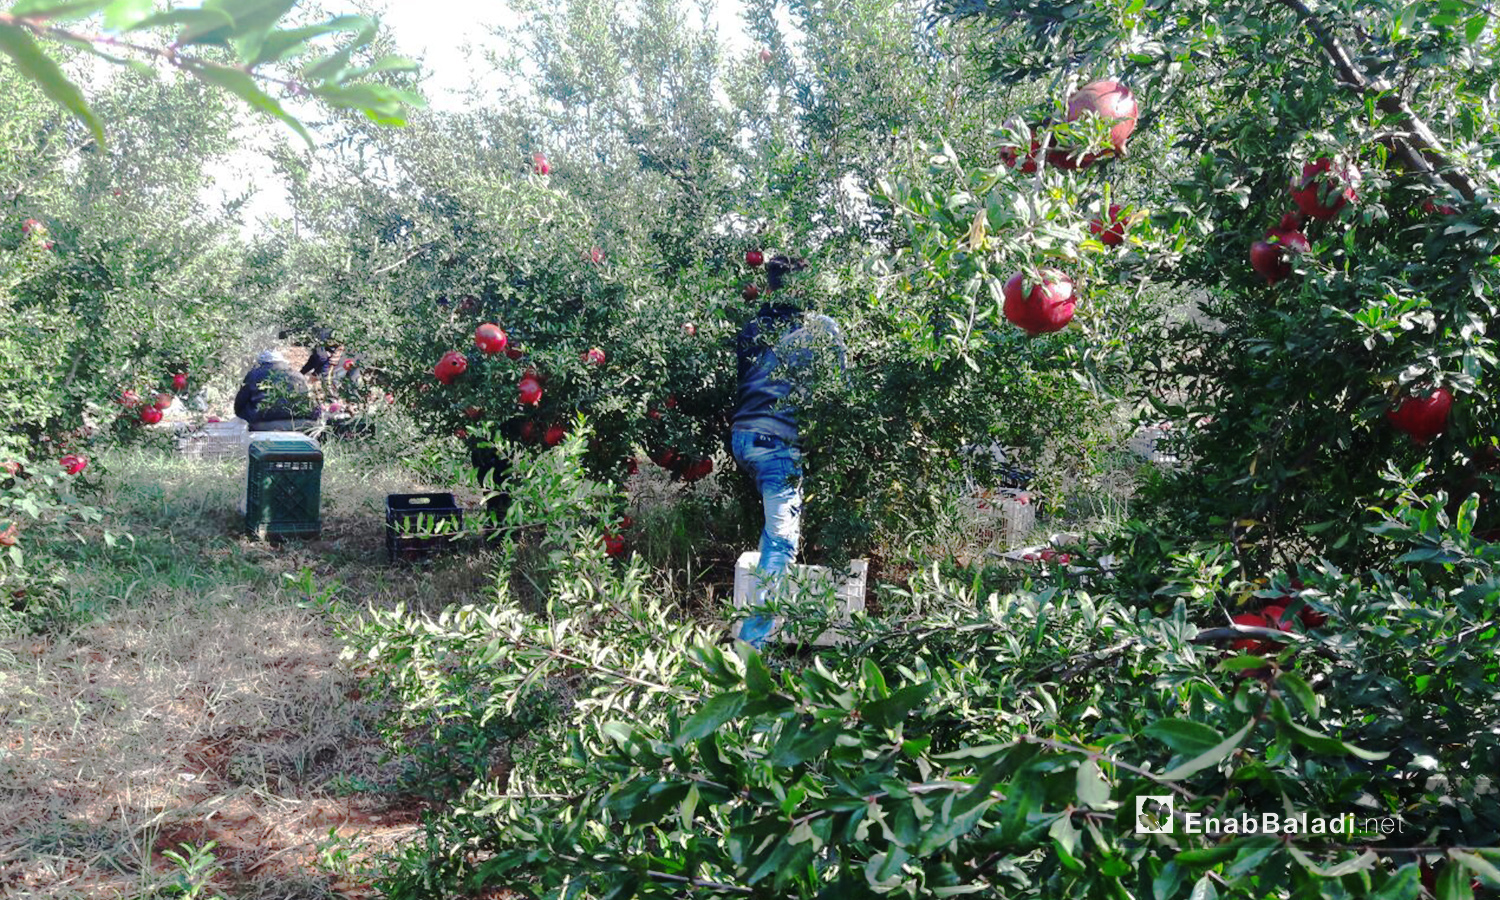 يجمع المزارعون ثمار الرمان من النوع "الفرنسي" في بساتين ريف درعا الغربي بعد نضوجها  - 6 تشرين الثاني 2020 (عنب بلدي/ حليم محمد)